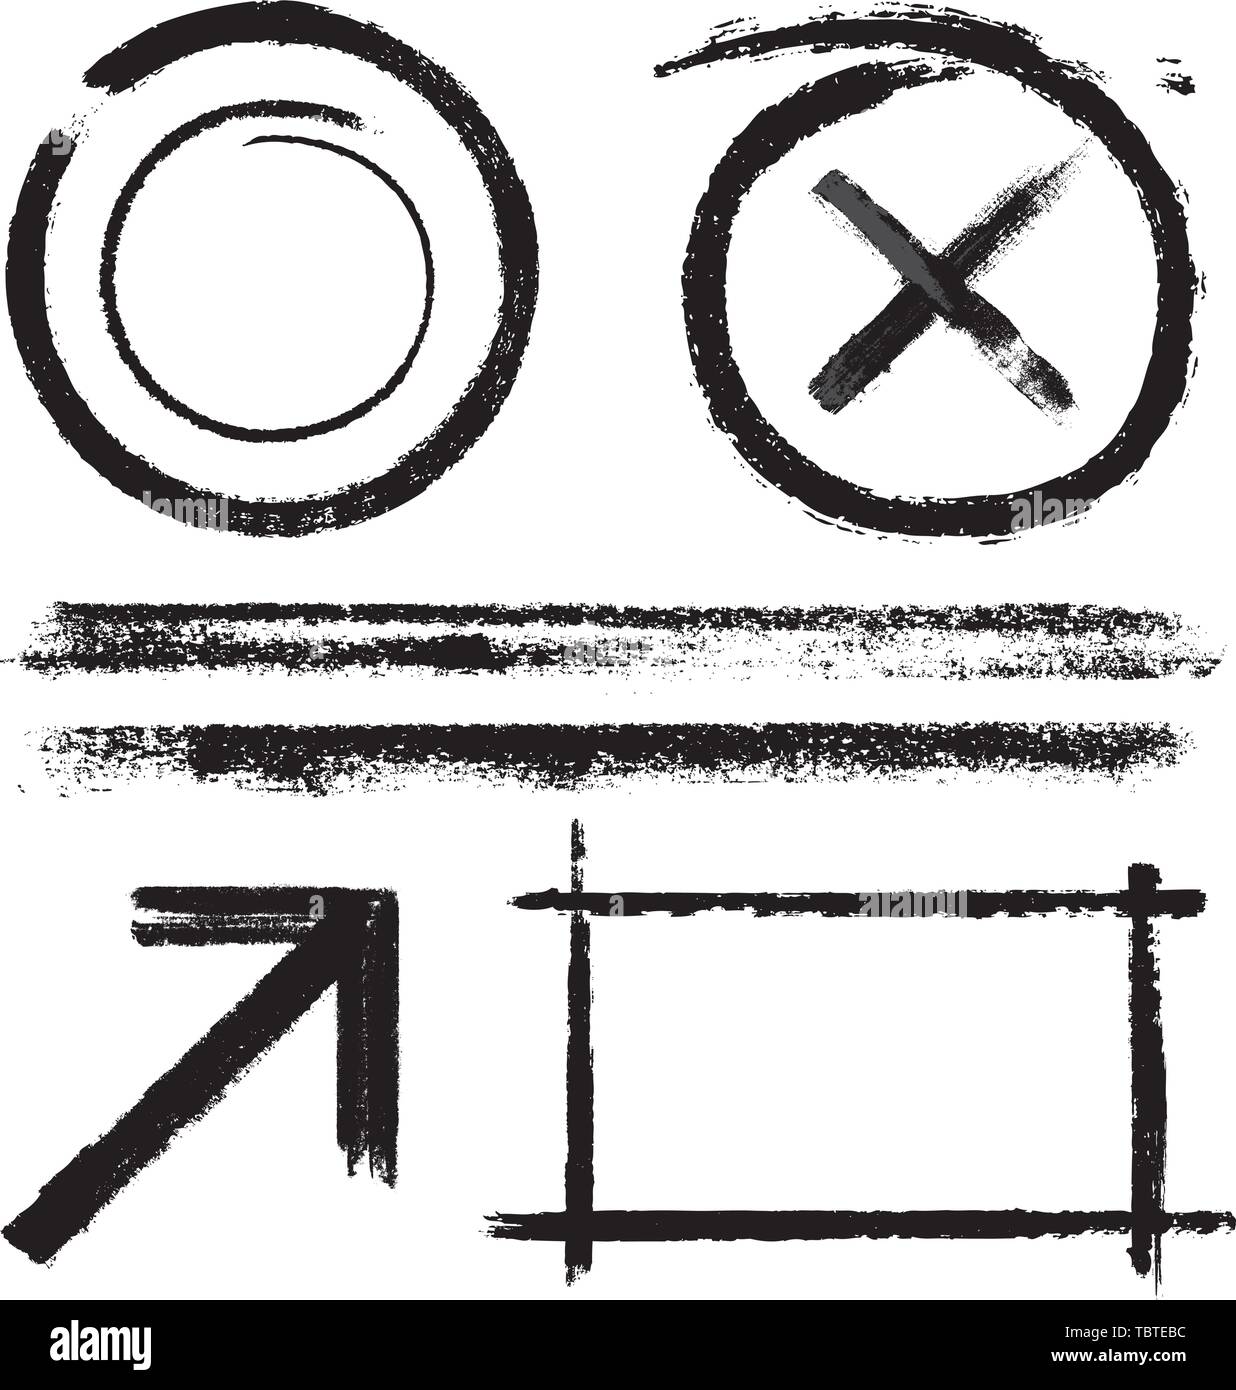 Illustrazione Vettoriale. Verniciato nero linee in varie forme. Quadrato, Cerchio, la linea e la freccia. Illustrazione Vettoriale